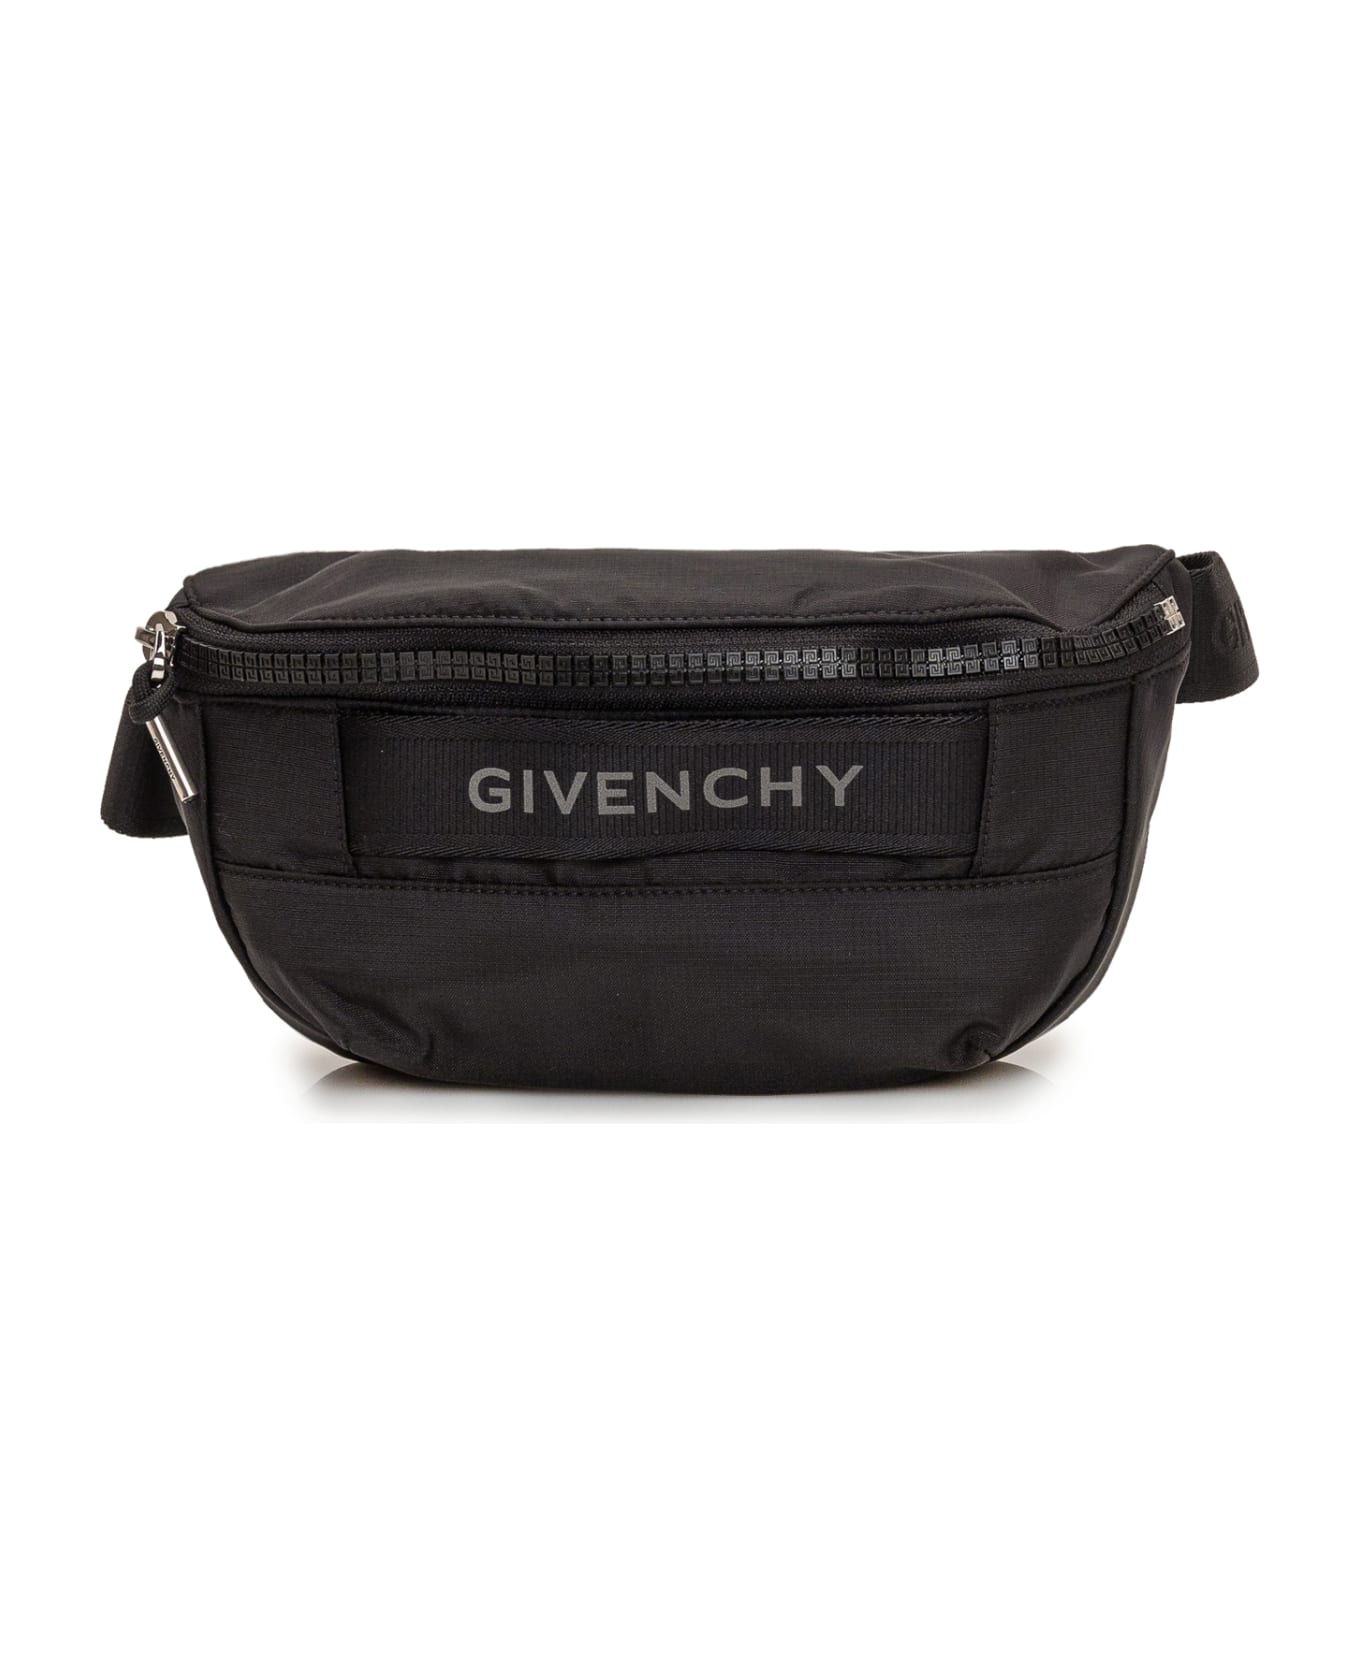 Givenchy G-trek Waist Bag In Black Nylon - Black